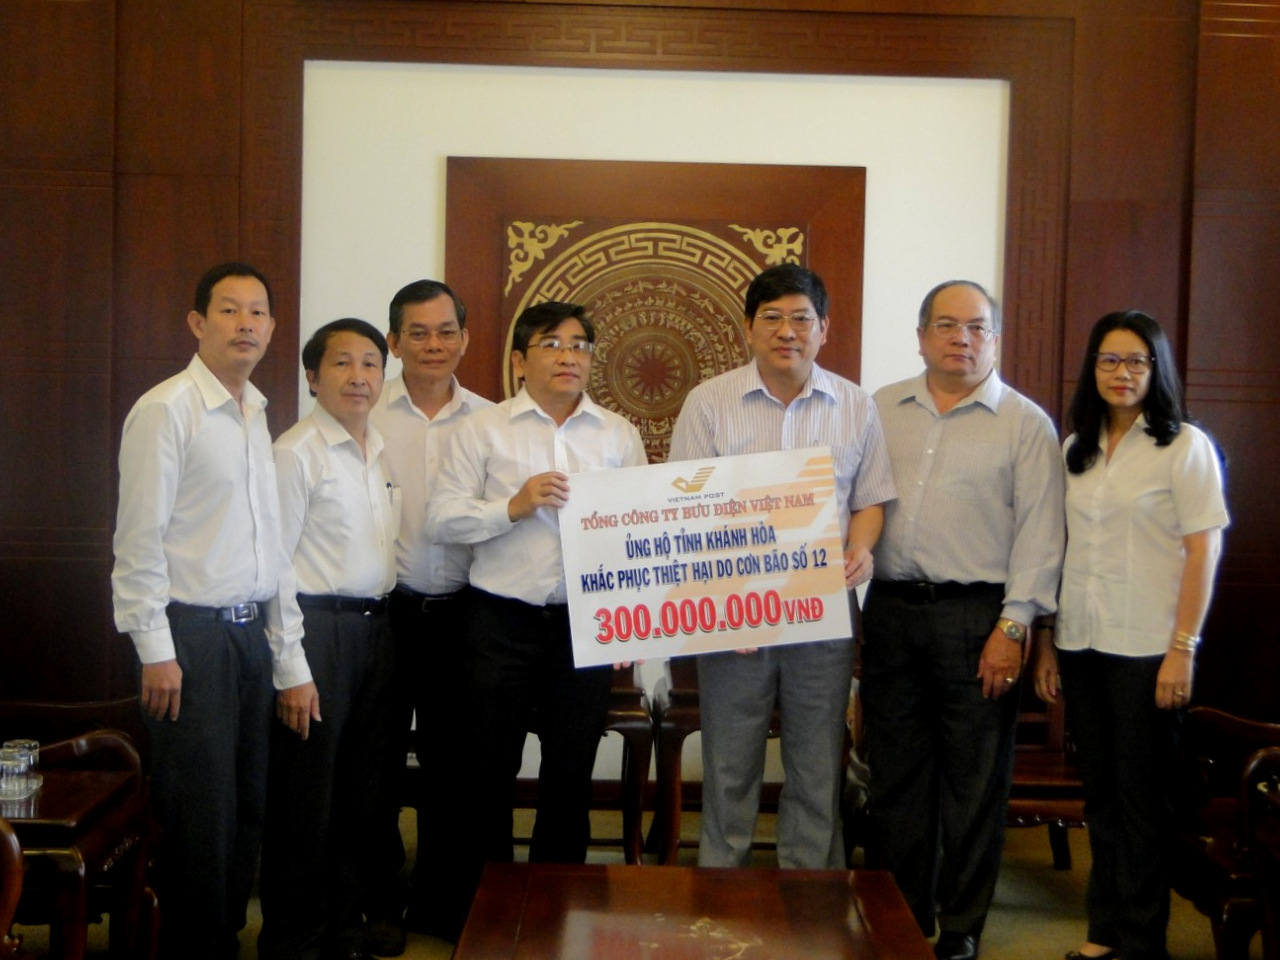 Đồng chí Nguyễn Duy Bắc - Phó Chủ tịch UBND tỉnh tiếp nhận 300 triệu đồng ủng hộ của Tổng công ty Bưu điện Việt Nam